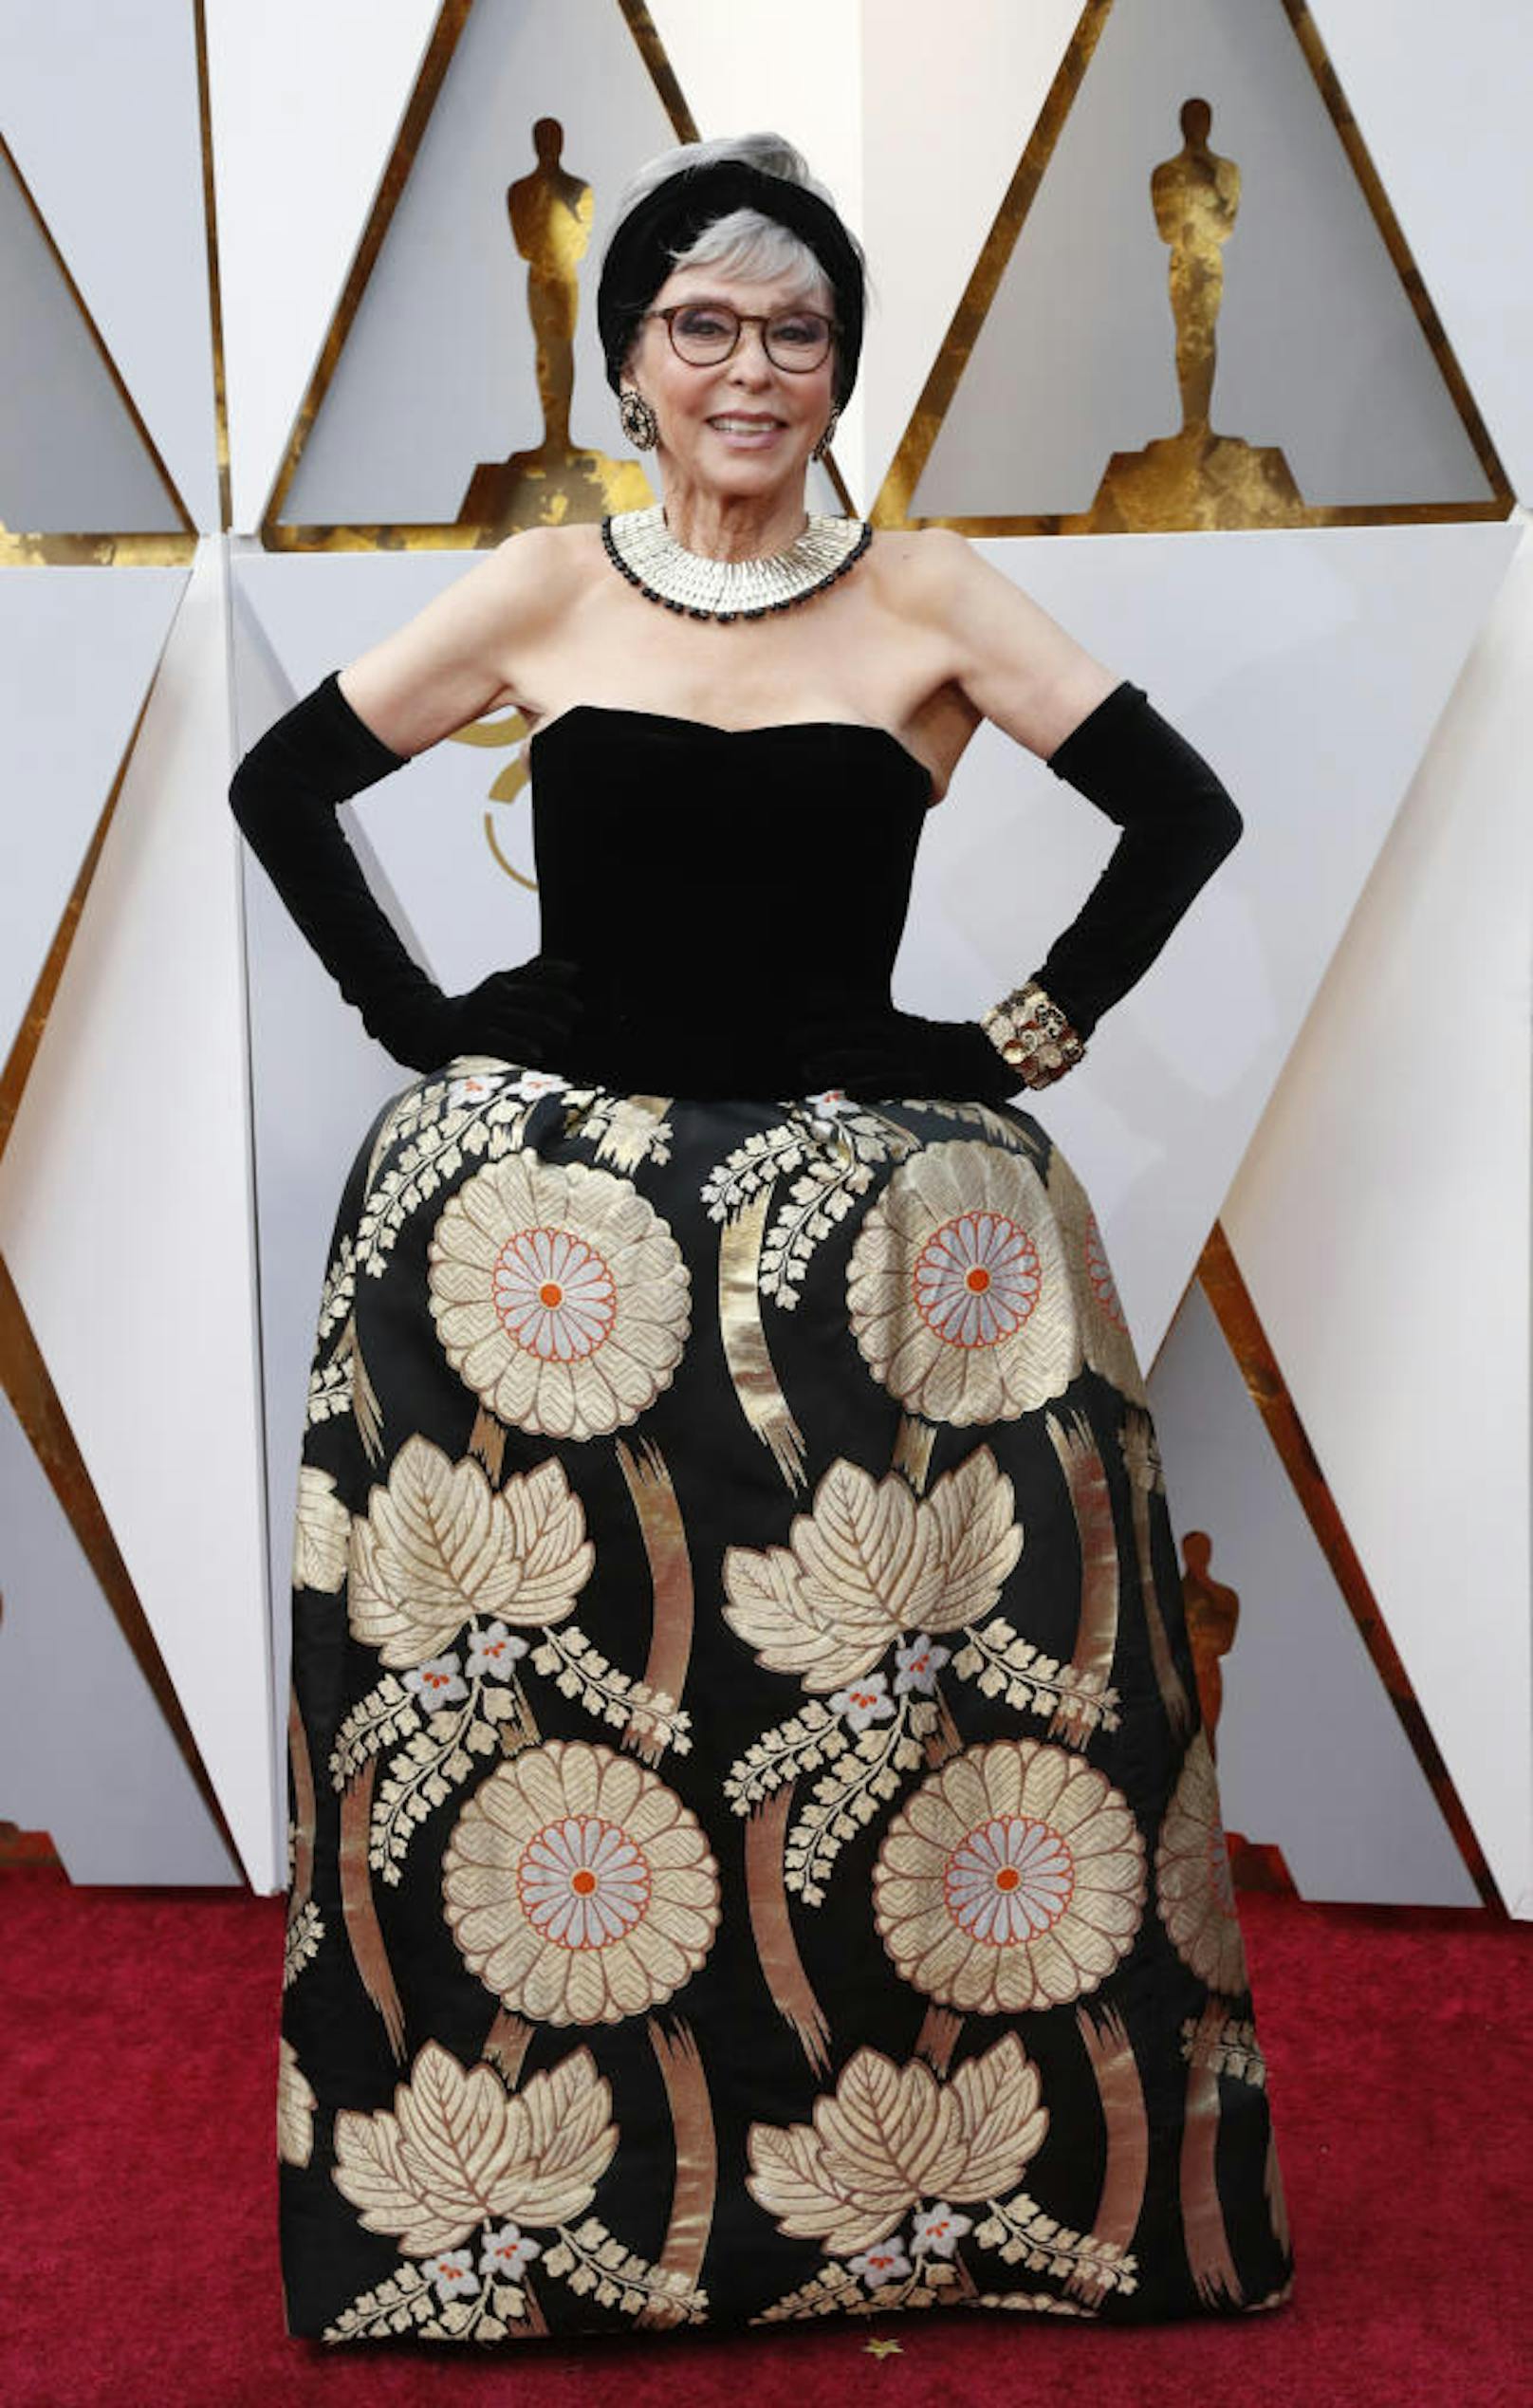 Zwar kann uns das Muster an <b>Rita Moreno</b>s Kleid eigentlich nicht überzeugen, die Geschichte der Robe überzeugt aber auf ganzer Linie: Diese Kreation trug die heute 86-Jährige bereits im Jahr 1962, als sie für "West Side Story" ihren ersten und einzigen Oscar gewann.